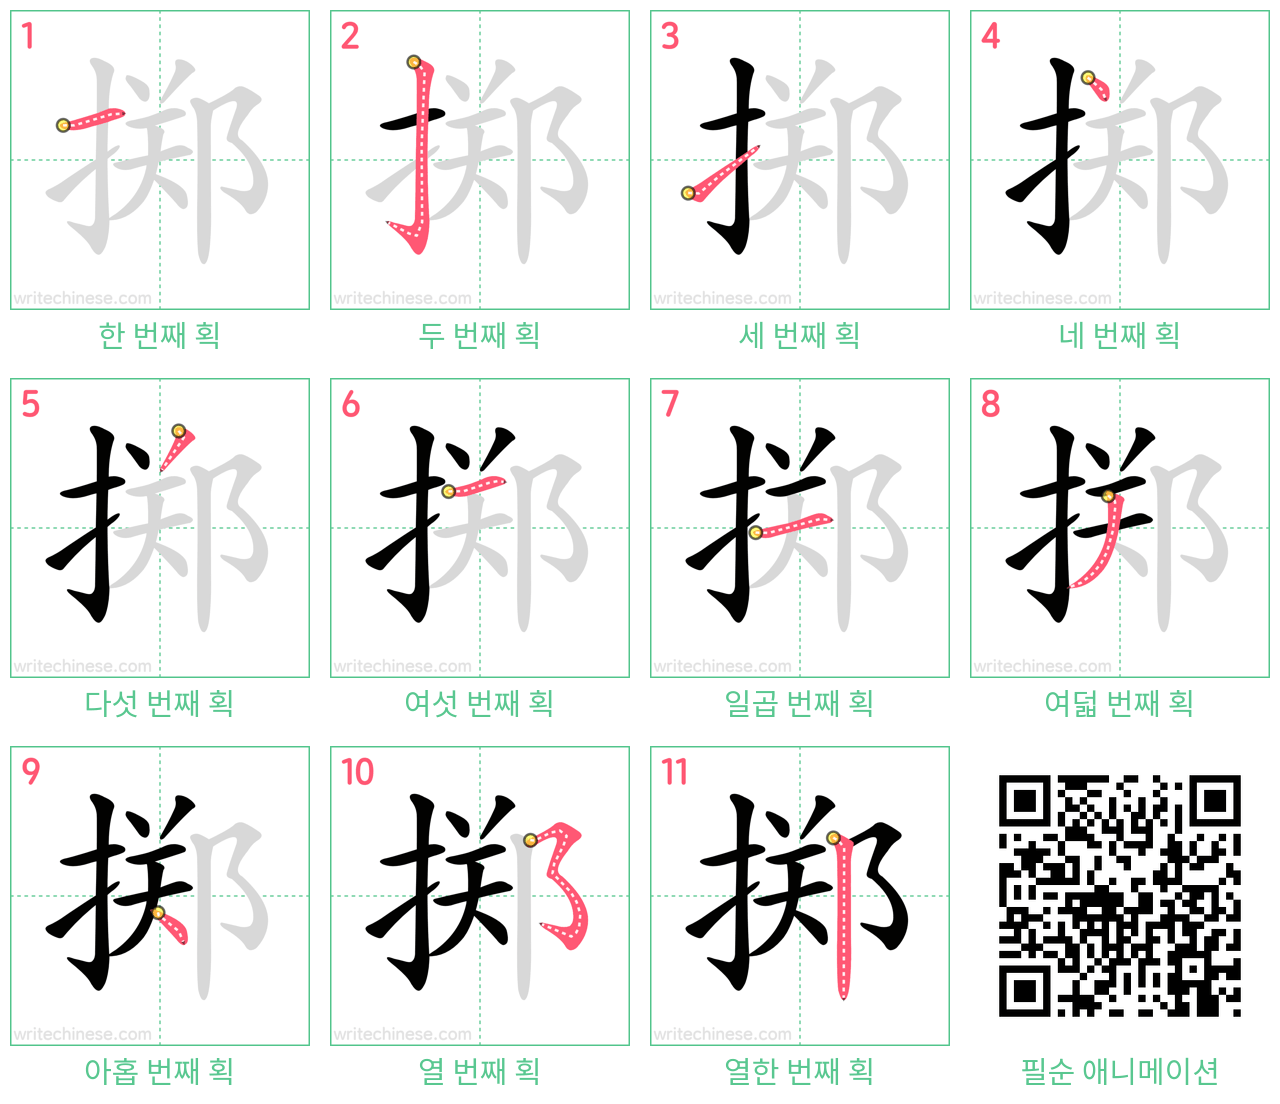 掷 step-by-step stroke order diagrams